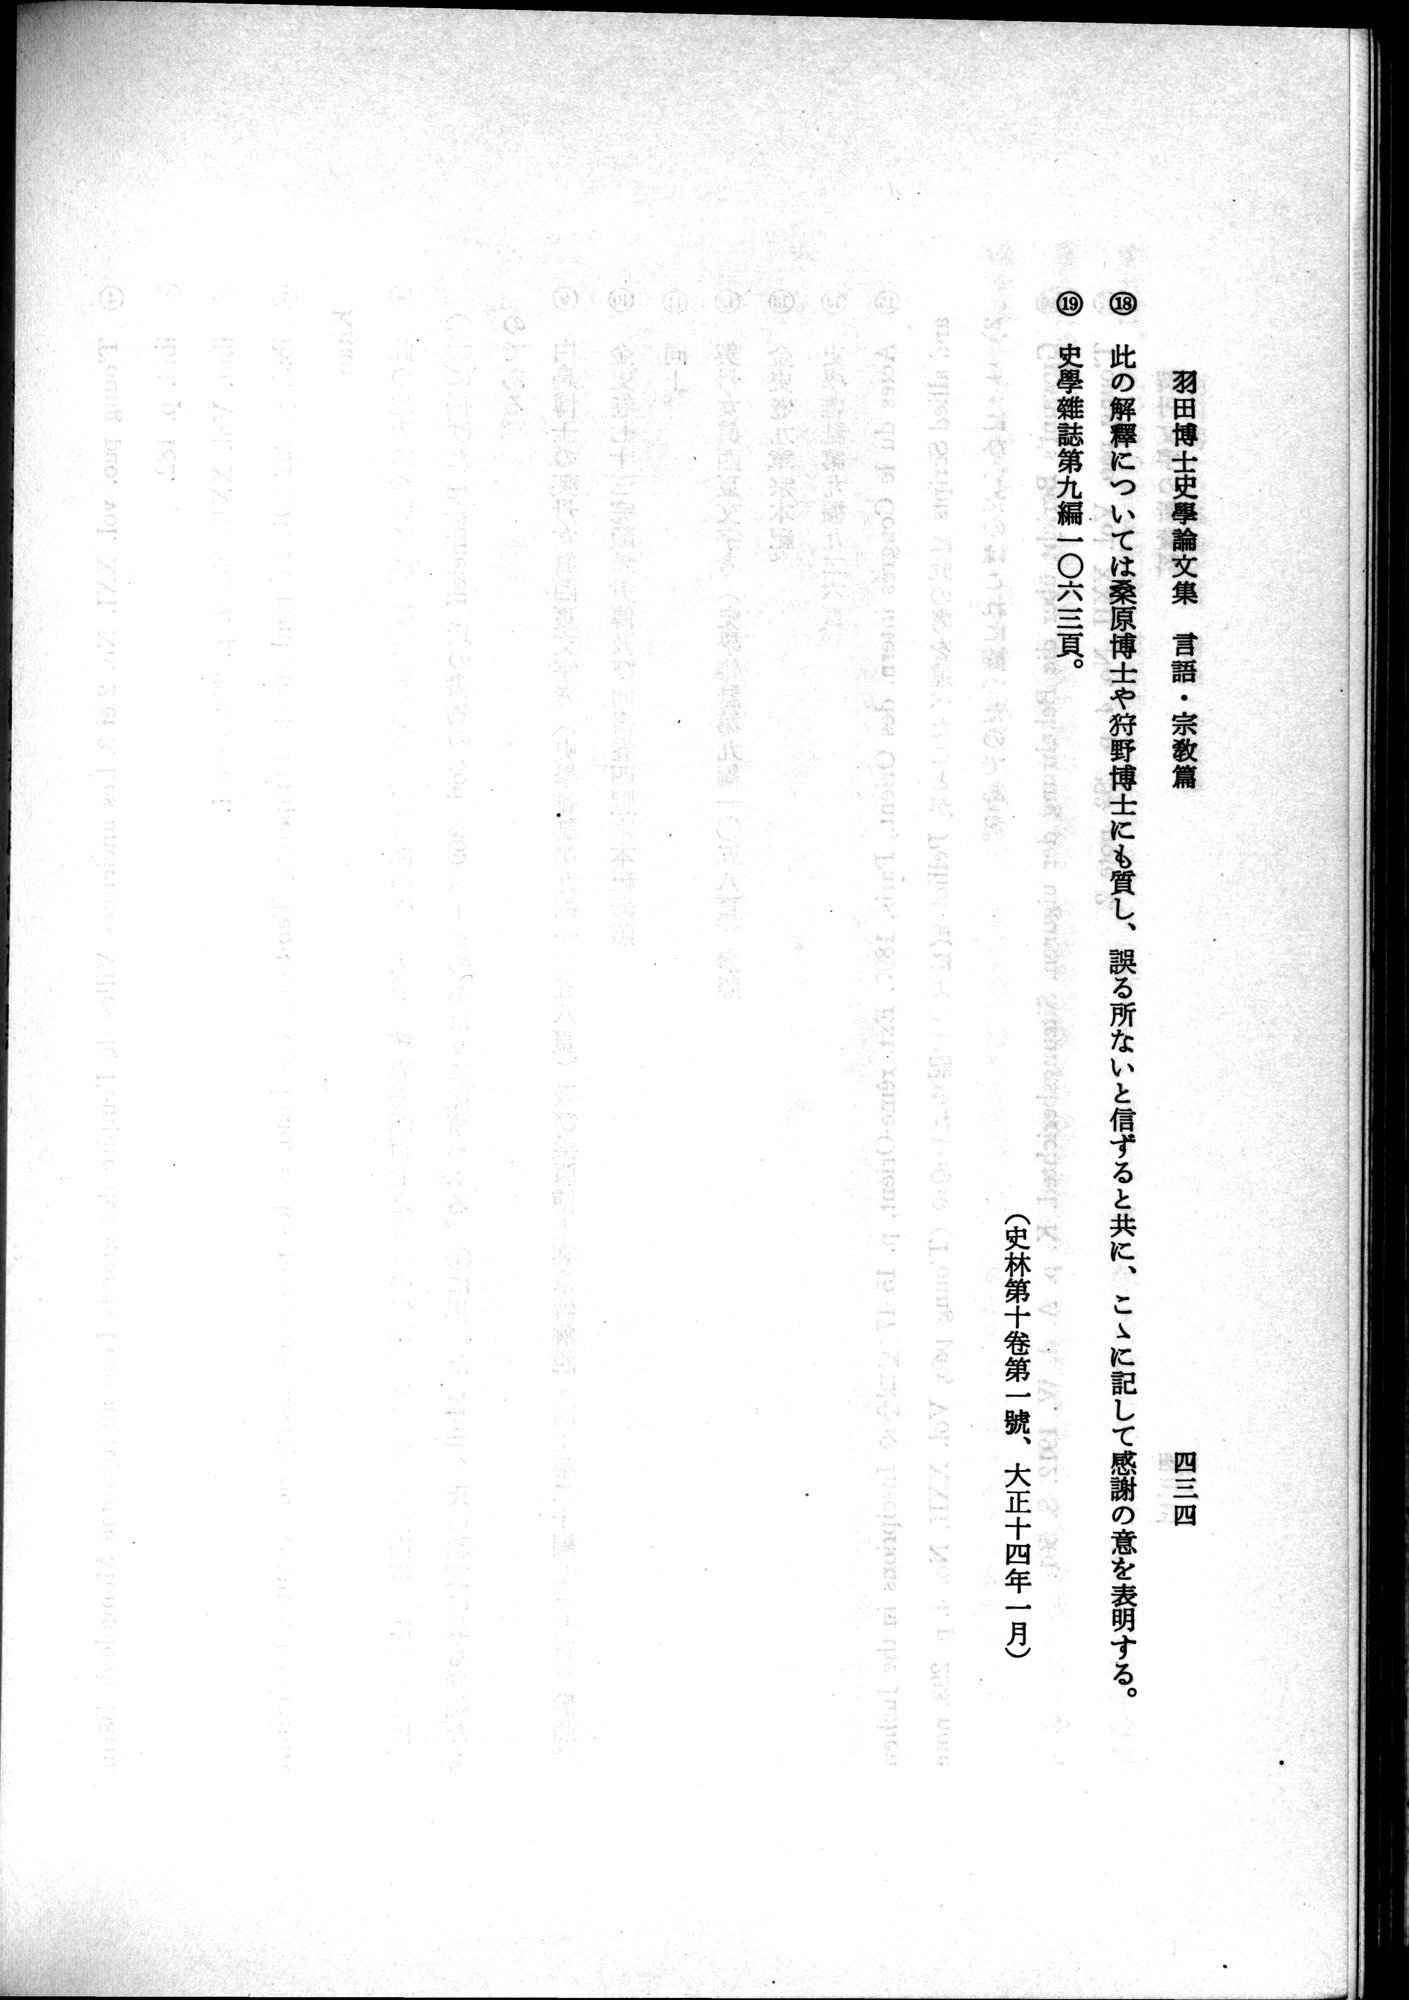 羽田博士史学論文集 : vol.2 / Page 496 (Grayscale High Resolution Image)